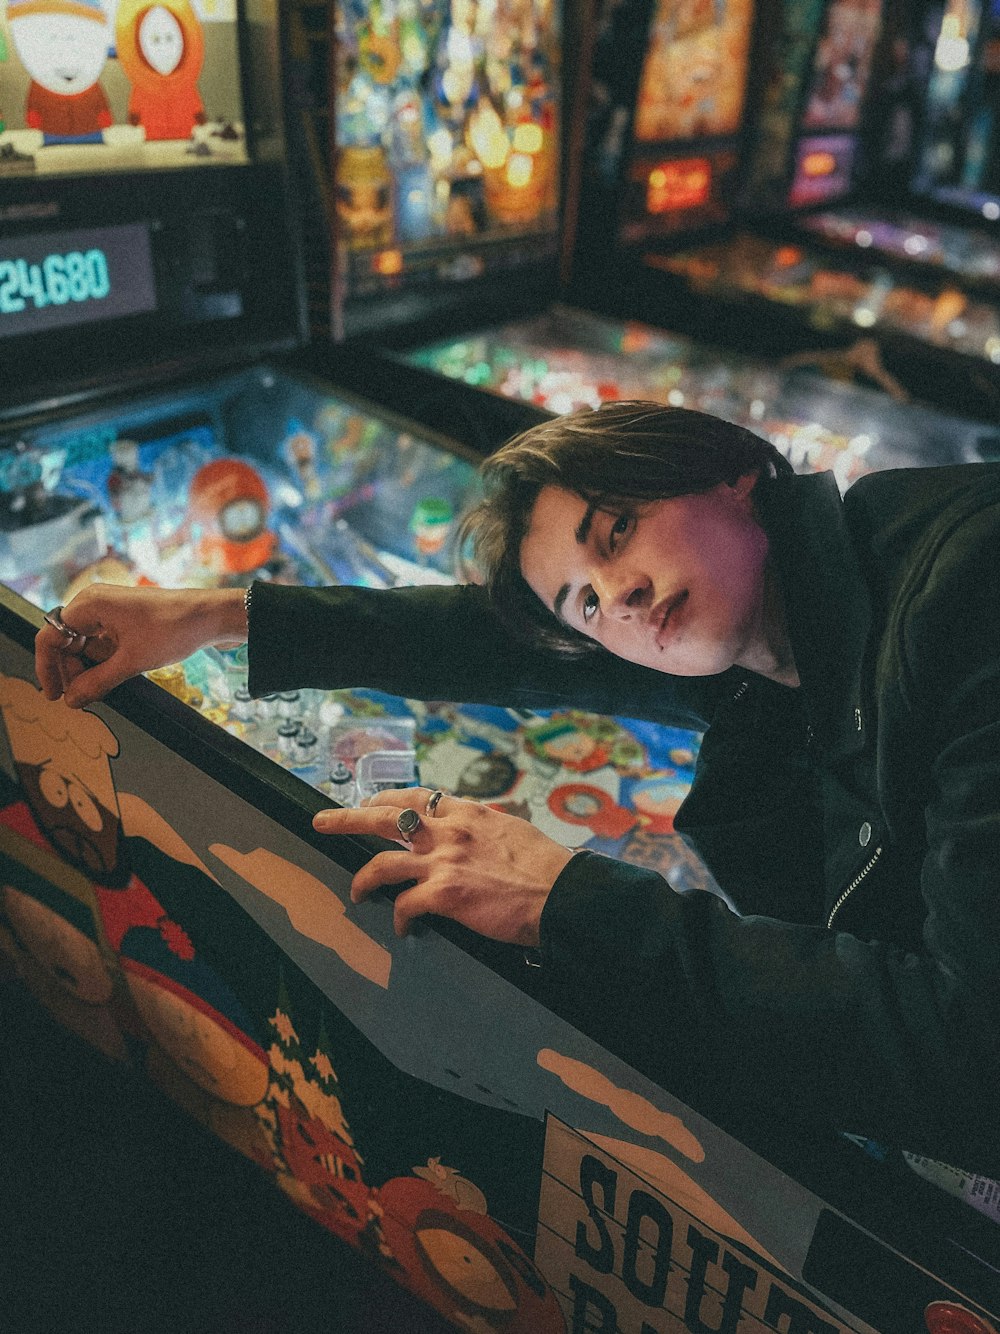 boy in black jacket playing arcade game